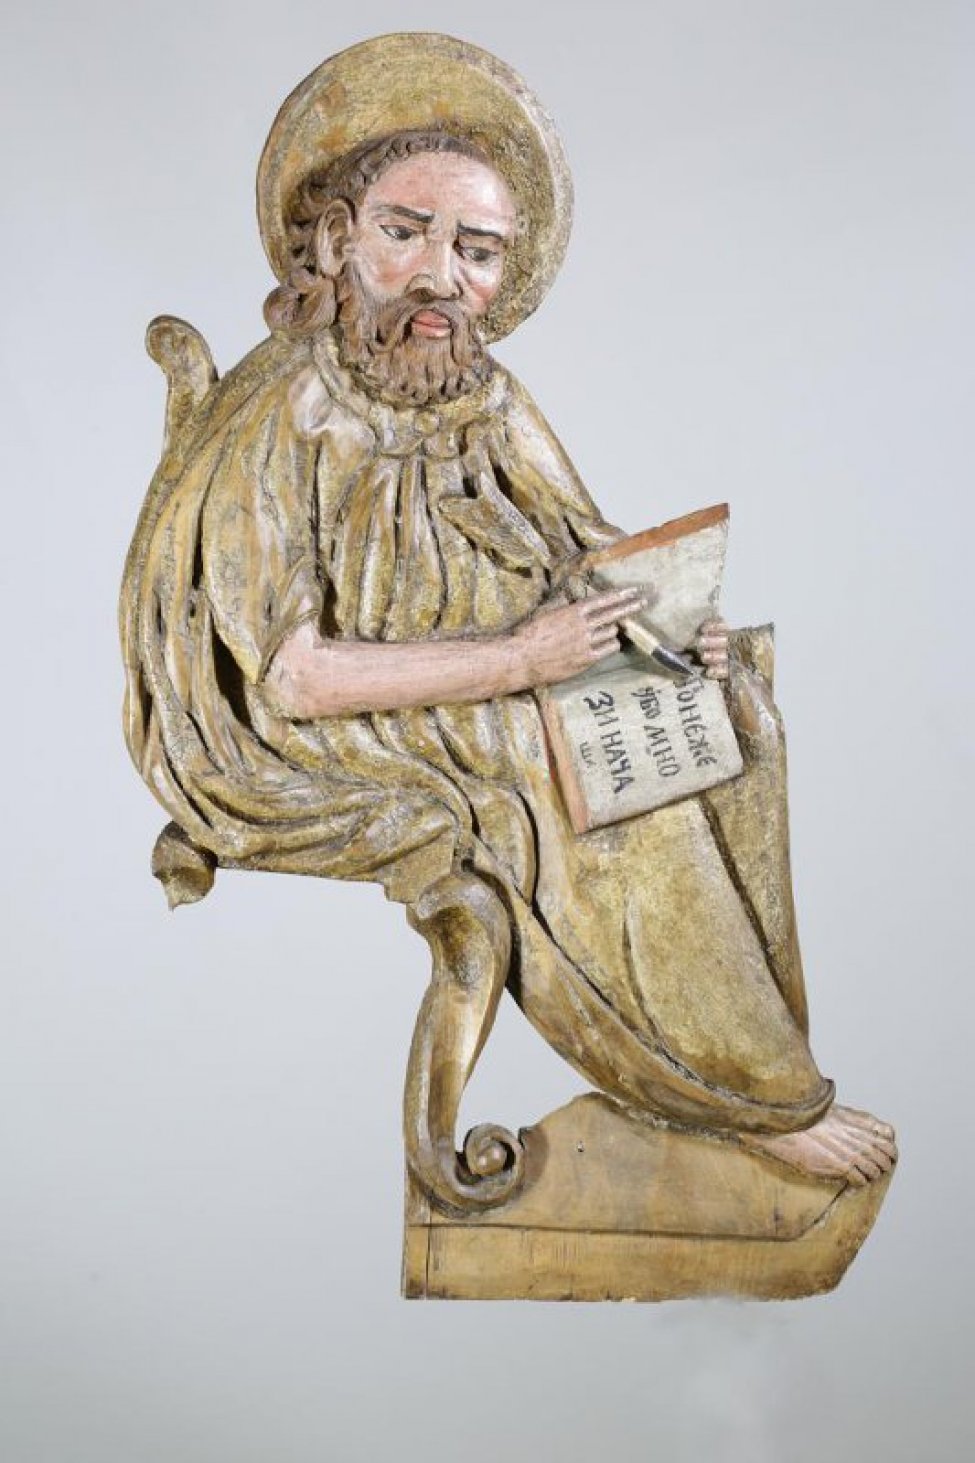 Апостол Лука изображен сидящим, с повернутым влево корпусом. На раскрытой книге написано: "понэже убо...". На голове - нимб. Скульптуру сопровождает изображение тельца.